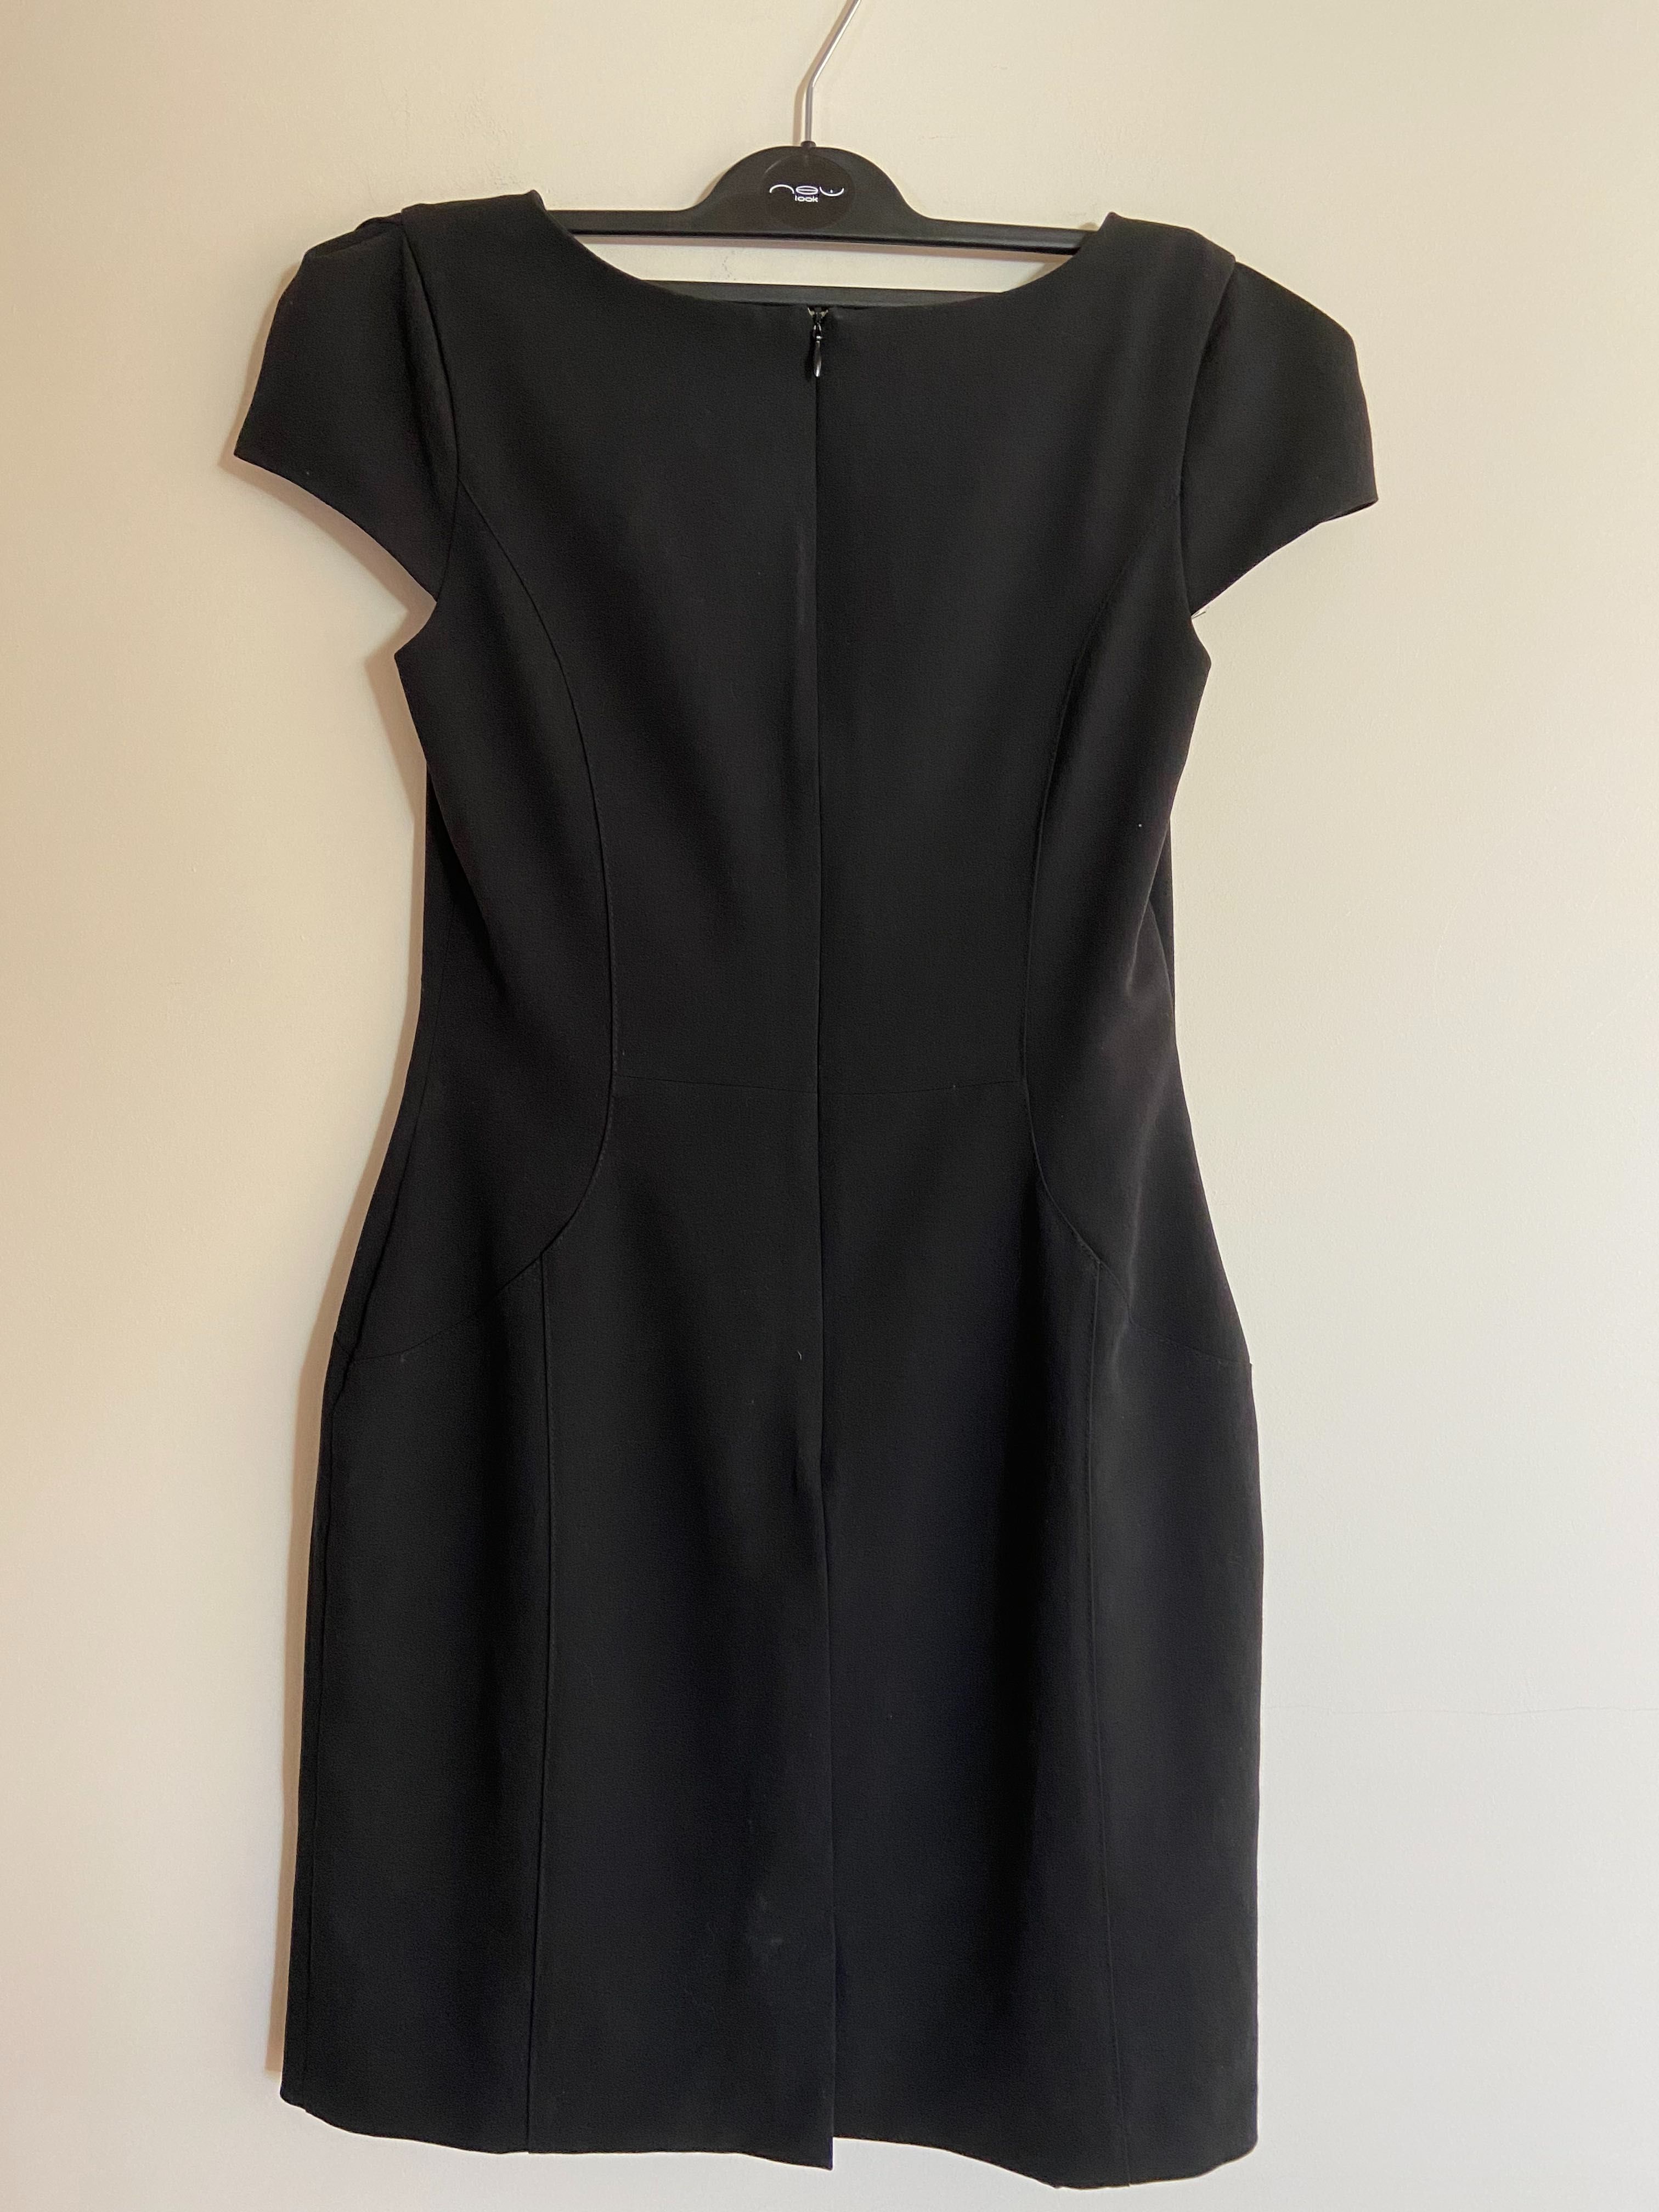 Czarna biurowa dopasowana sukienka firmy F&F